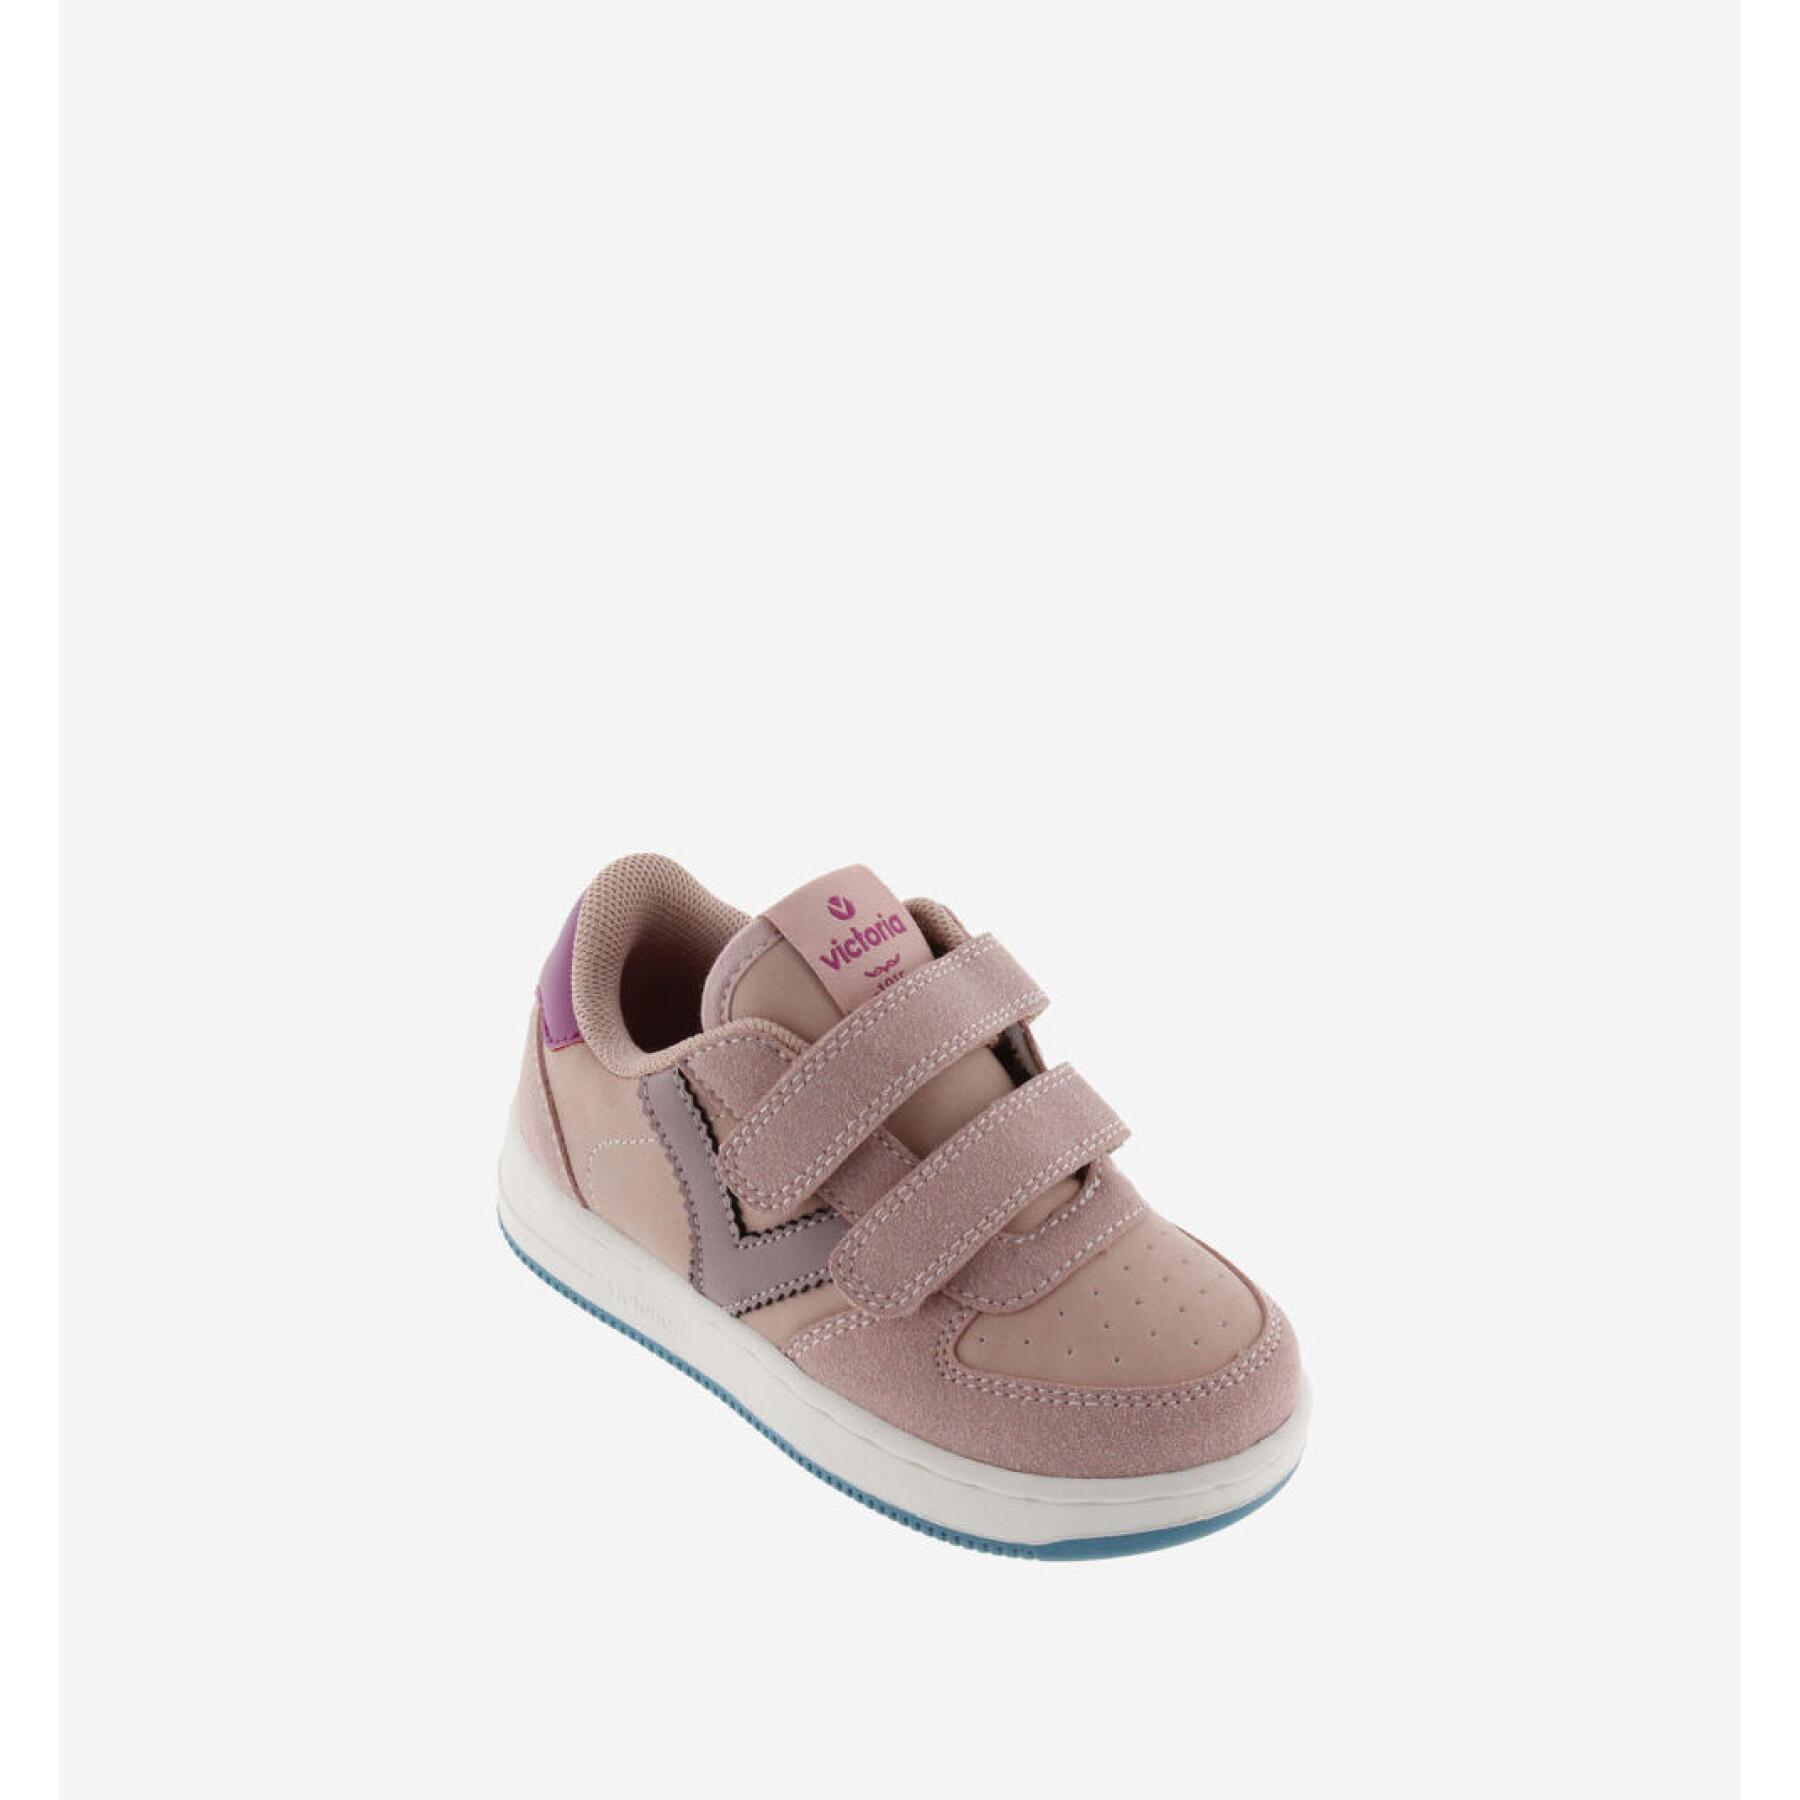 Baby girl sneakers Victoria Tiempo Efecto Piel